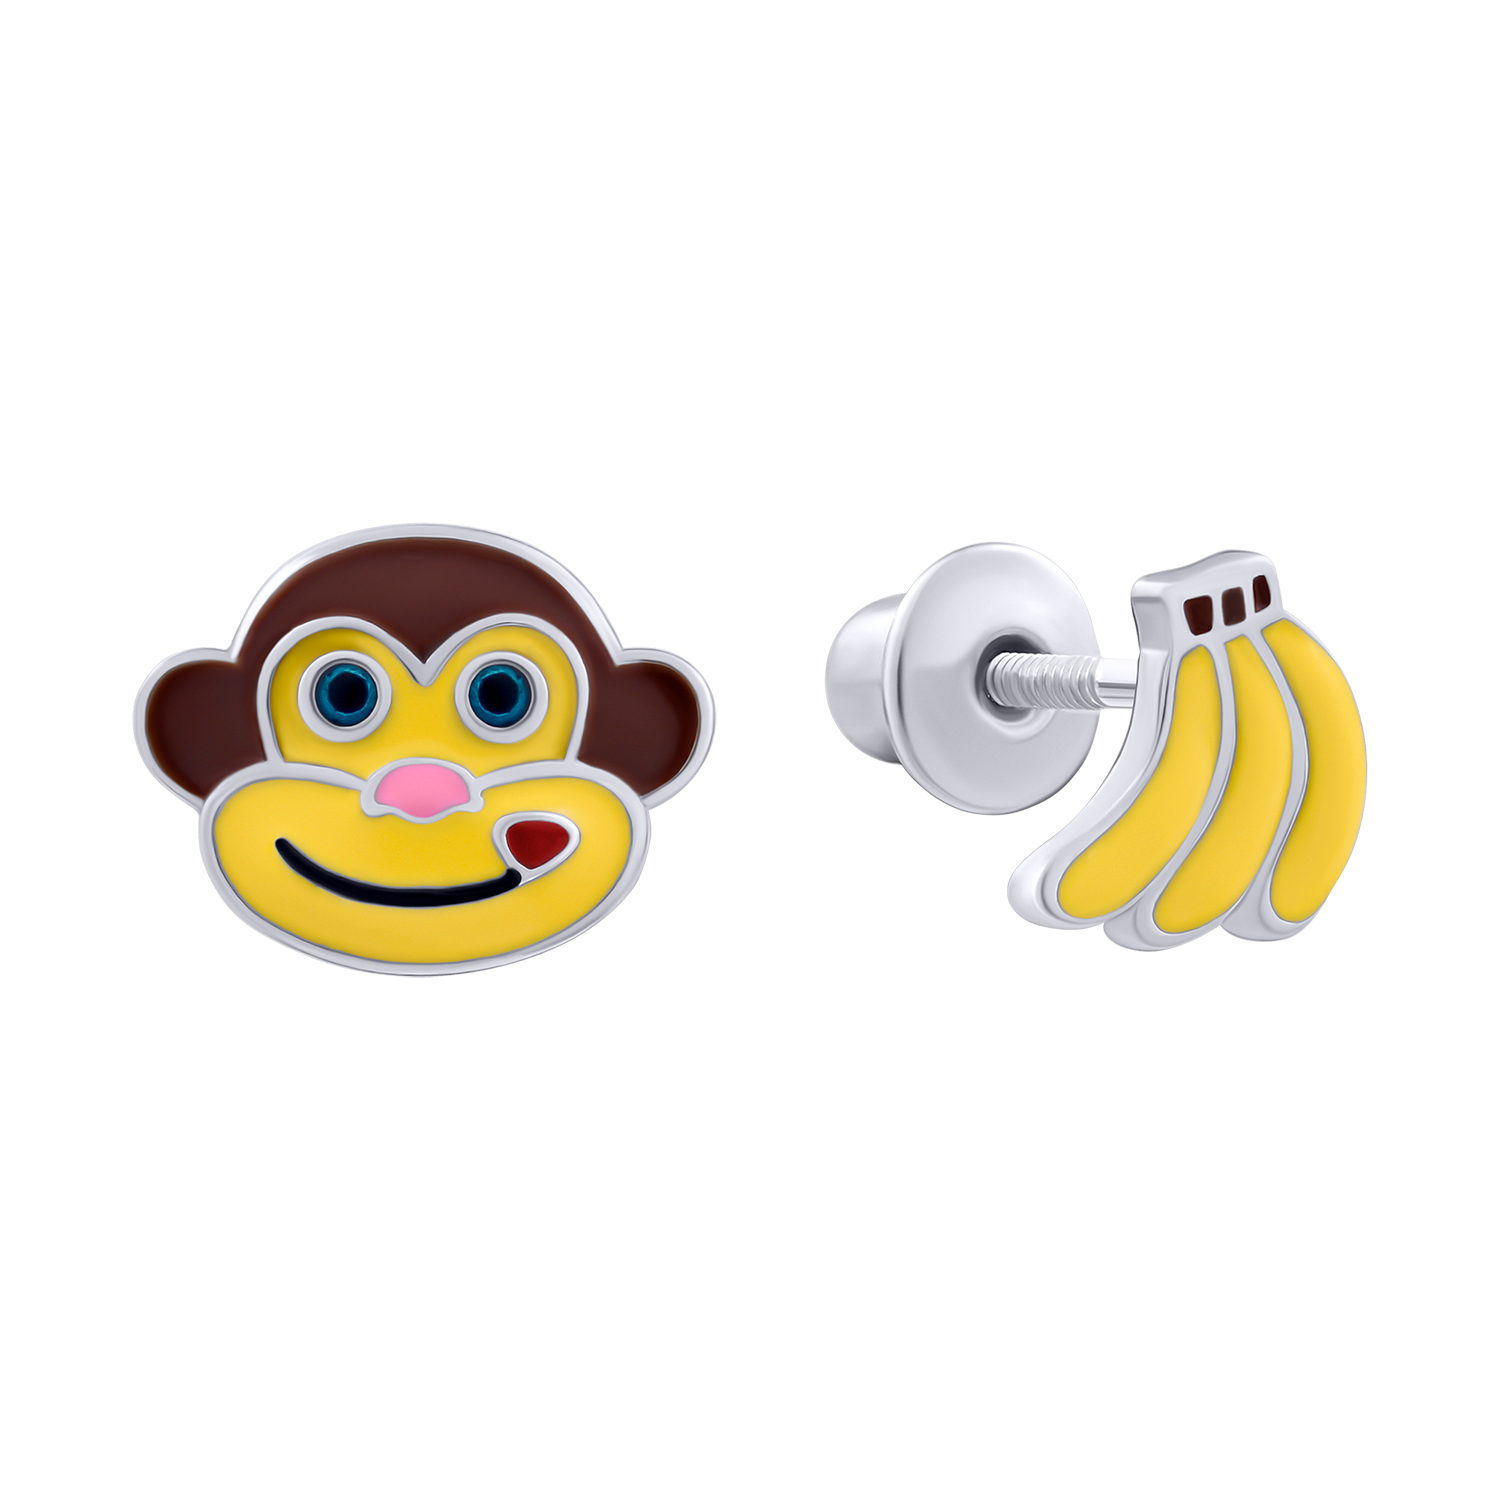 Earrings Monkey with Bananas